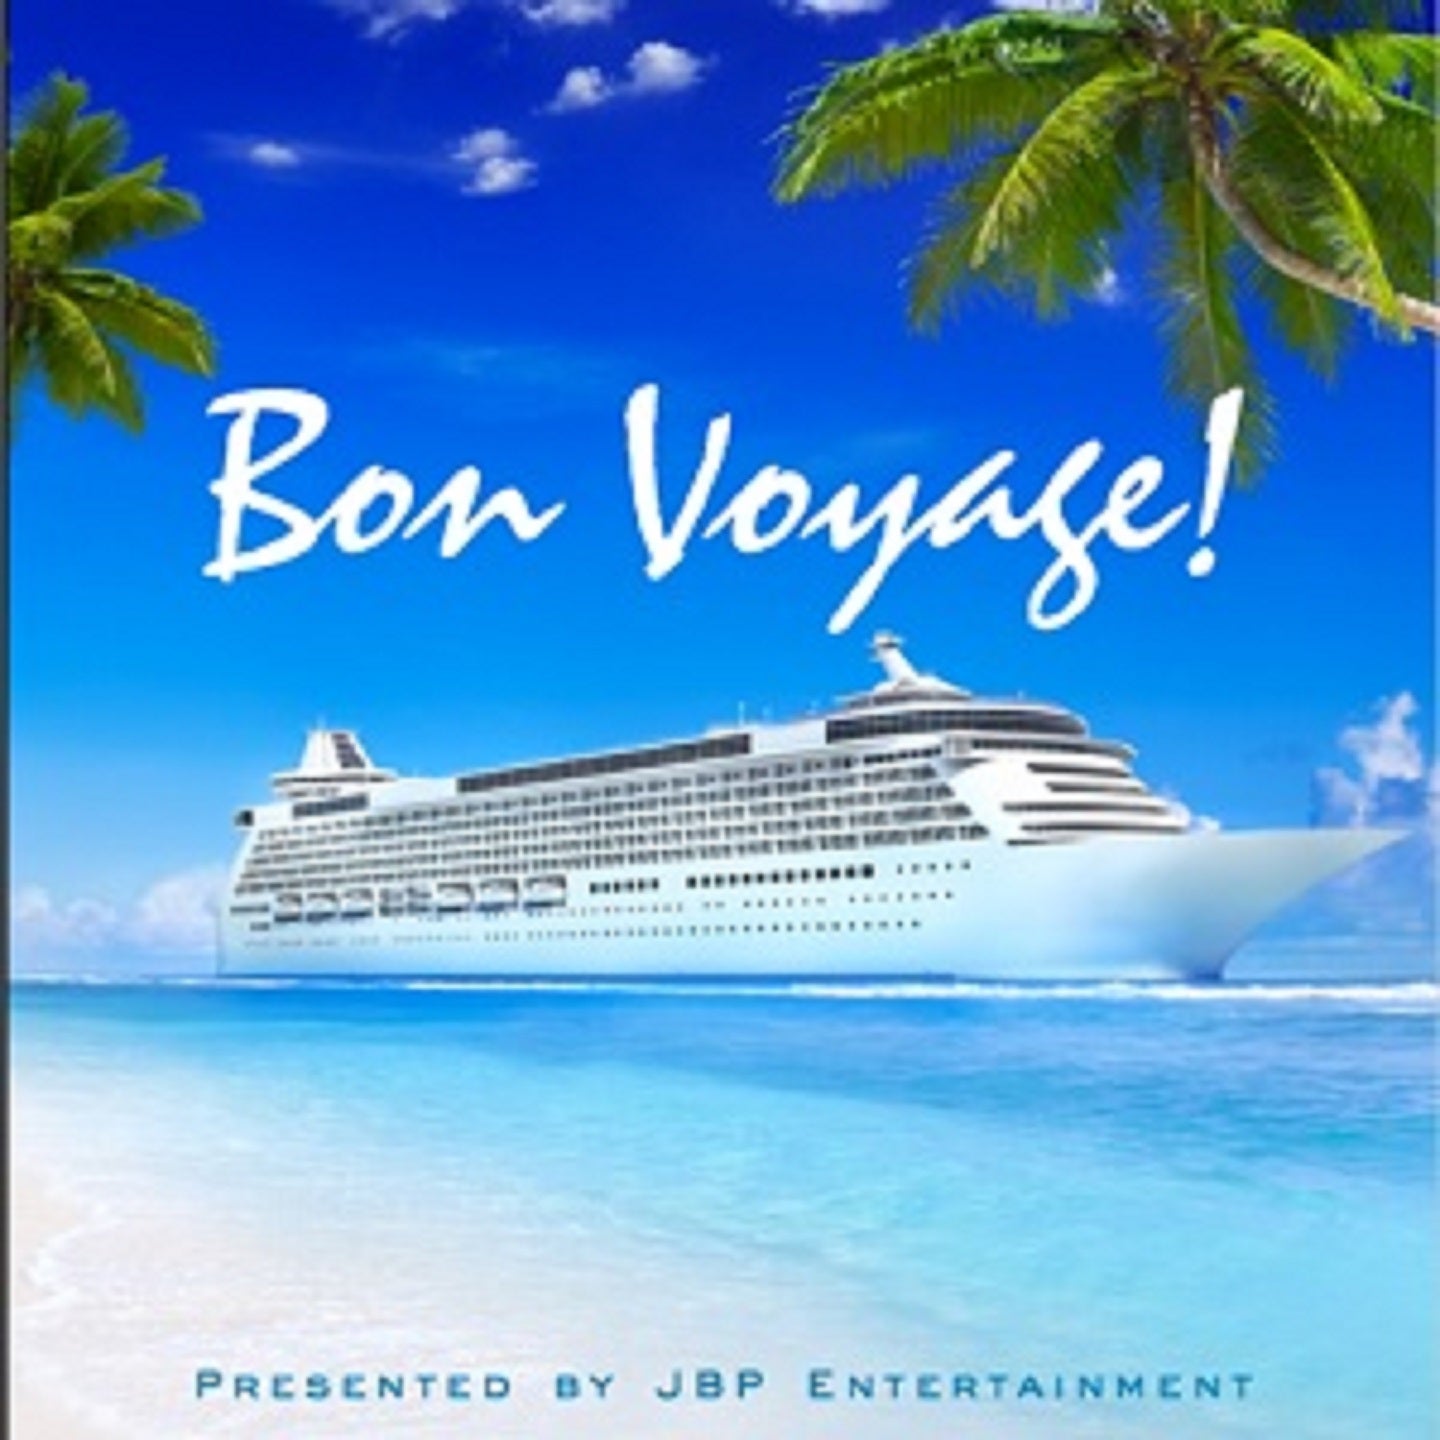 bon voyage boat cruise